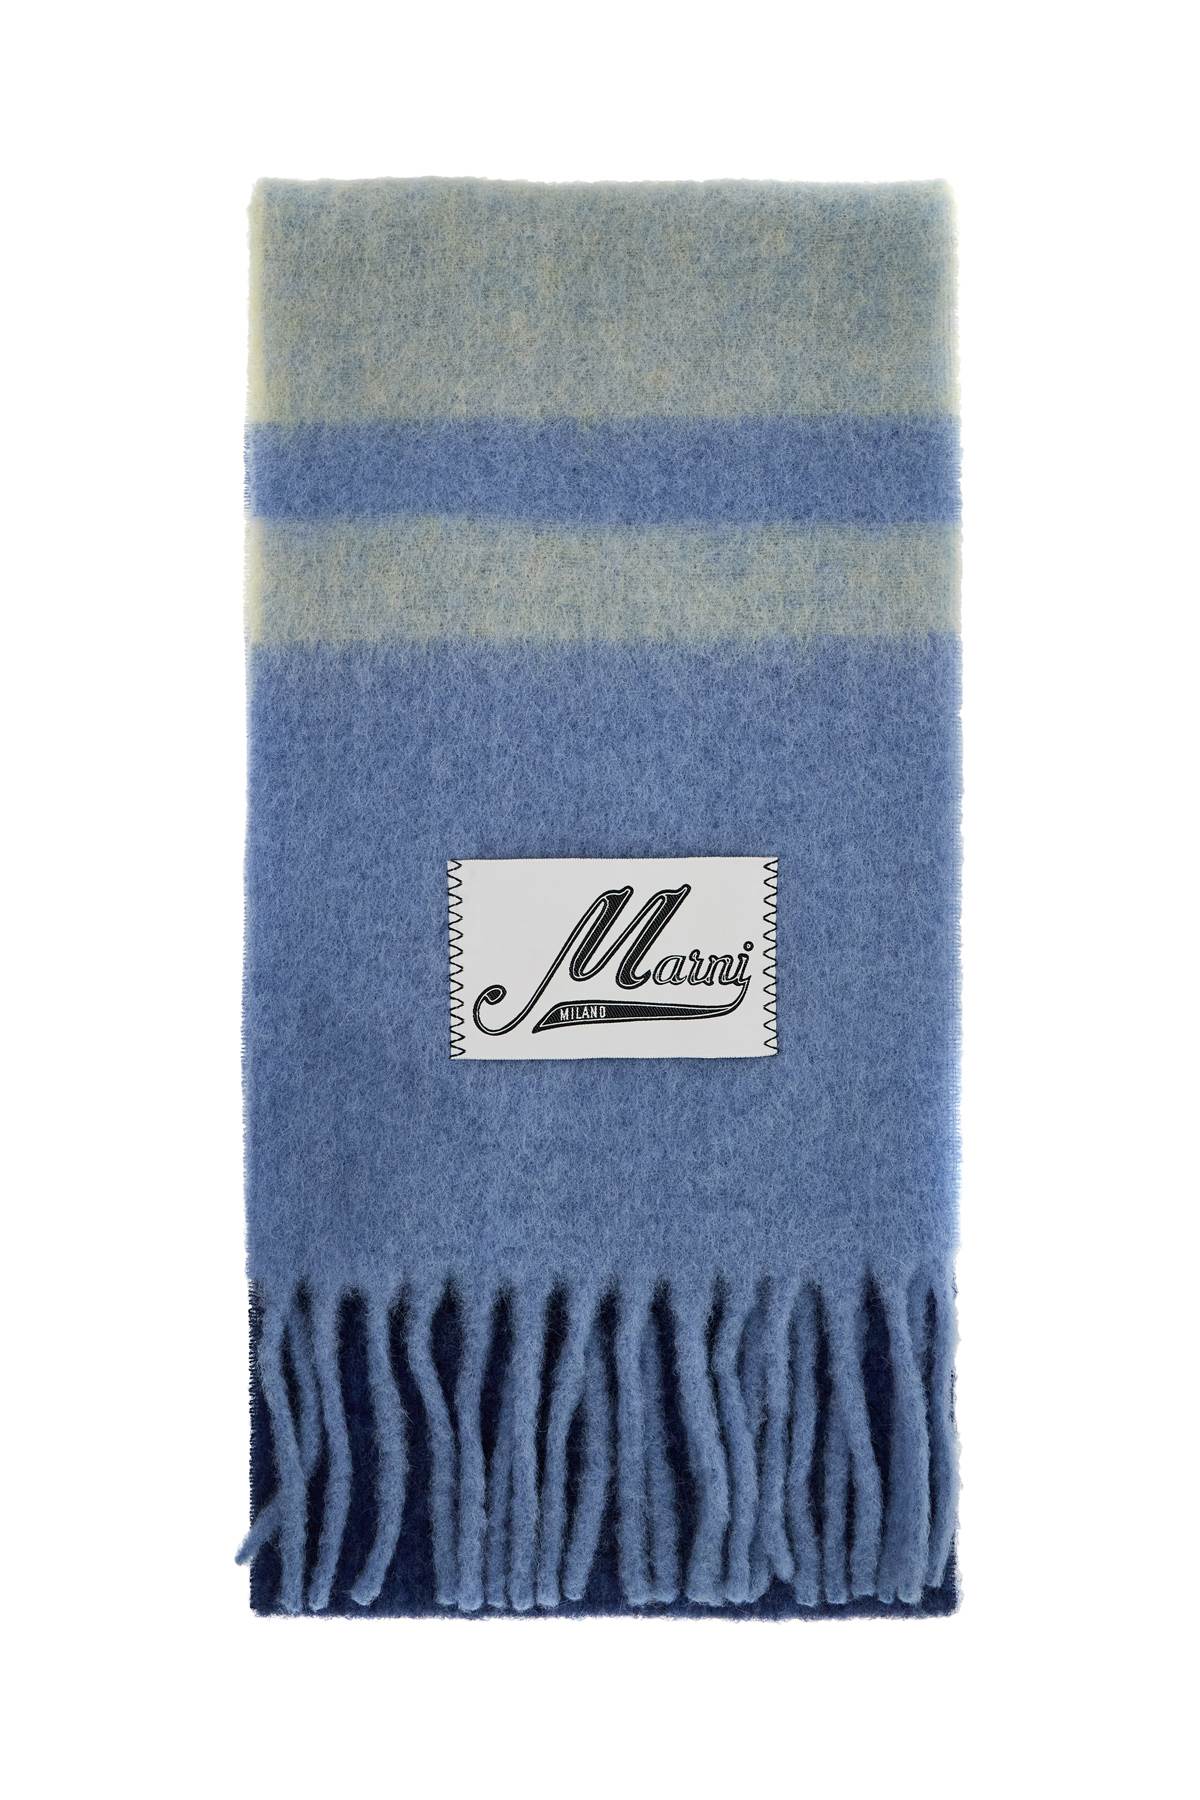 Marni MARNI mohair scarf for stylish